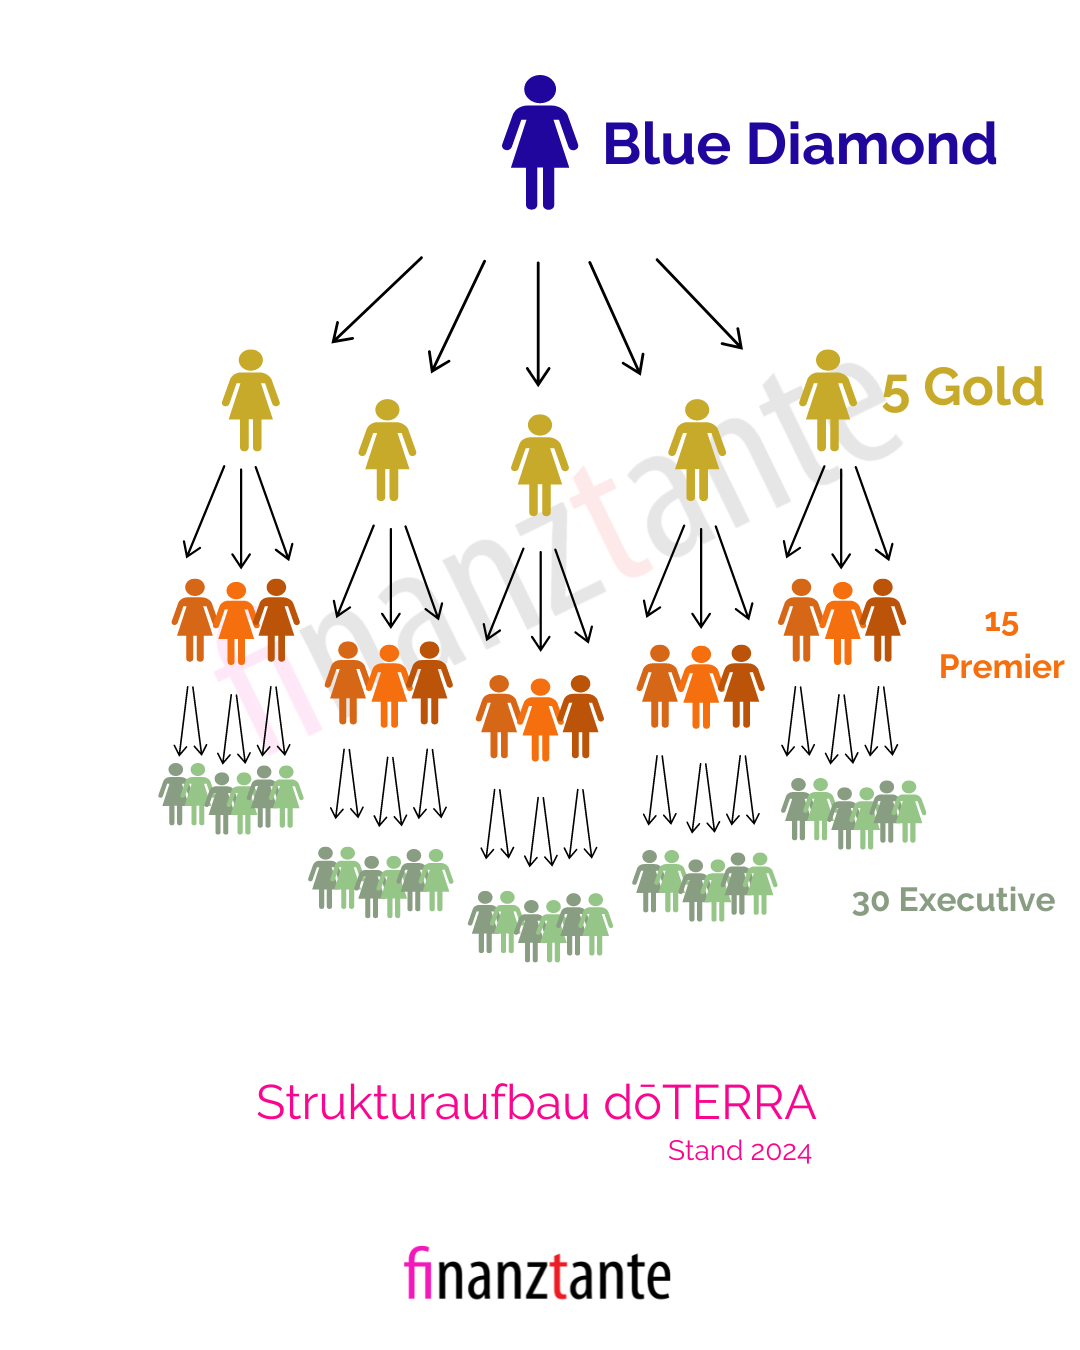 Verdienst Blue Diamond doTERRA, vergütungsplan, Strategie und Methode